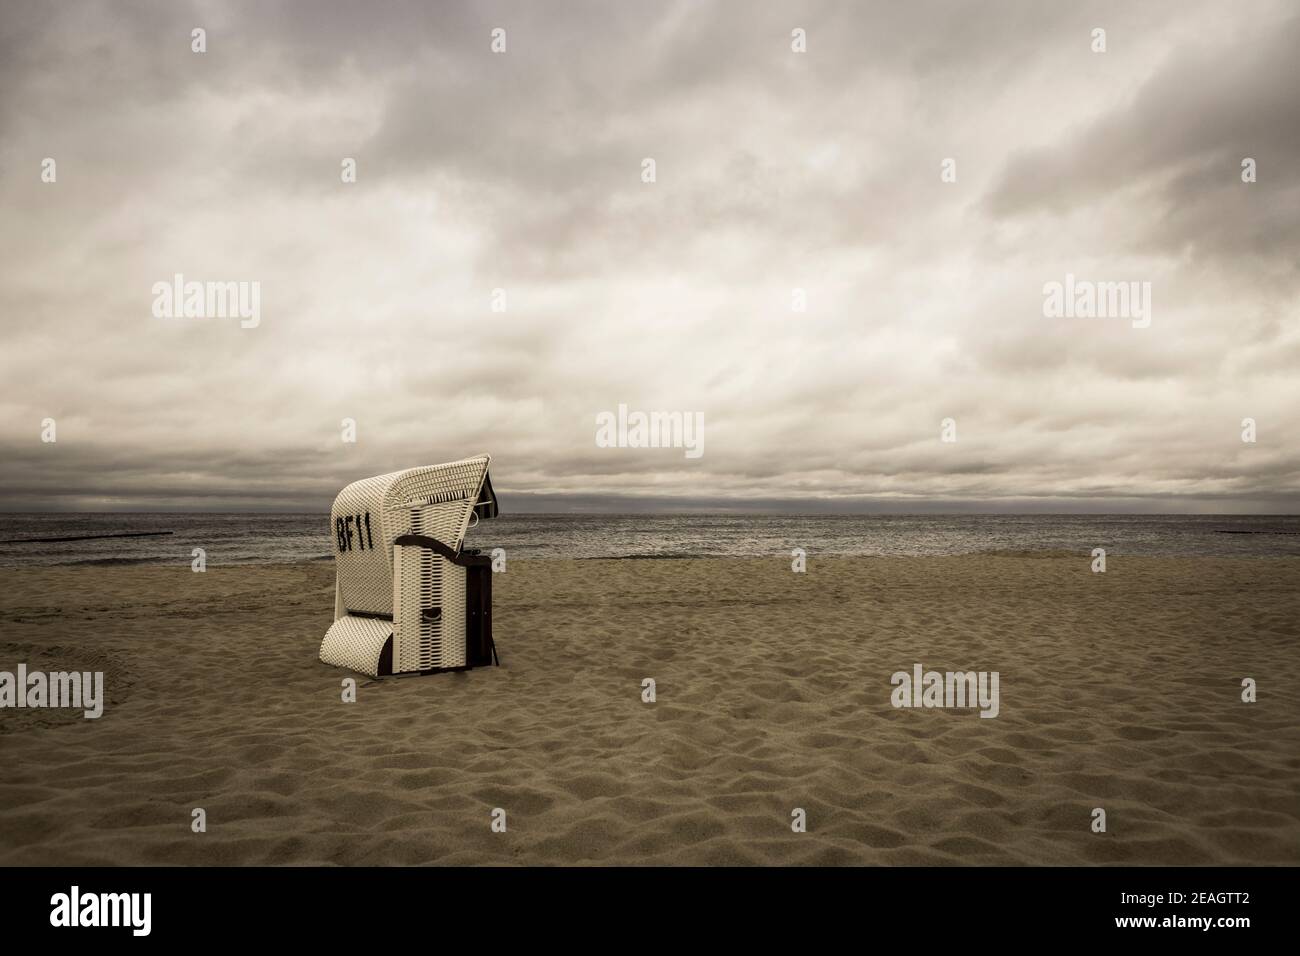 Nostalgia de las vacaciones y recuerdos lejanos concepto tiro de una playa escena con una silla de playa de mimbre y un cielo espectacular sepia Foto de stock